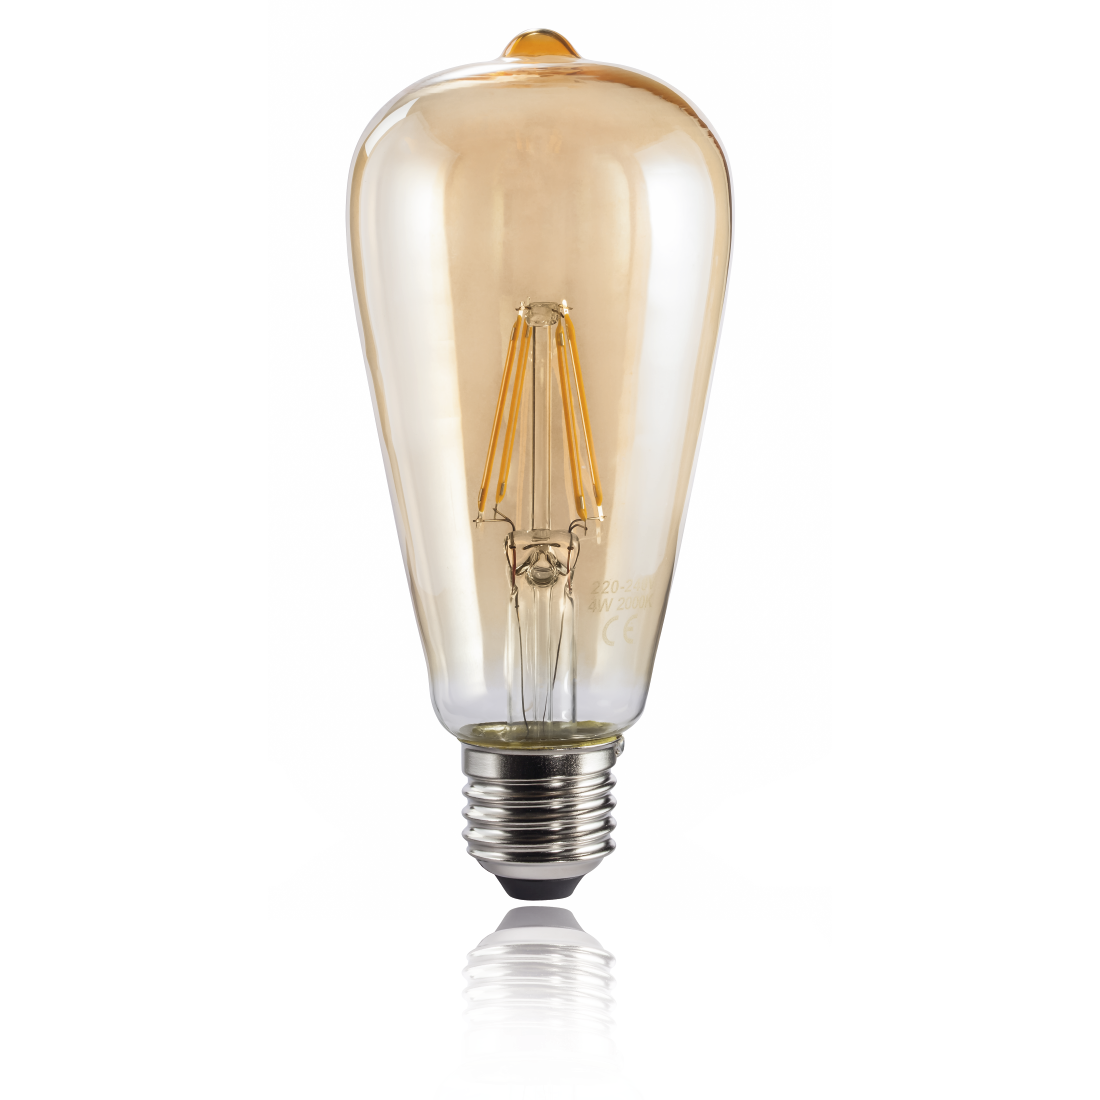 abx2 High-Res Image 2 - Xavax, Ampoule filam. LED, E27, 410lm remp. 36W, amp. vintage, ambre, blc chd